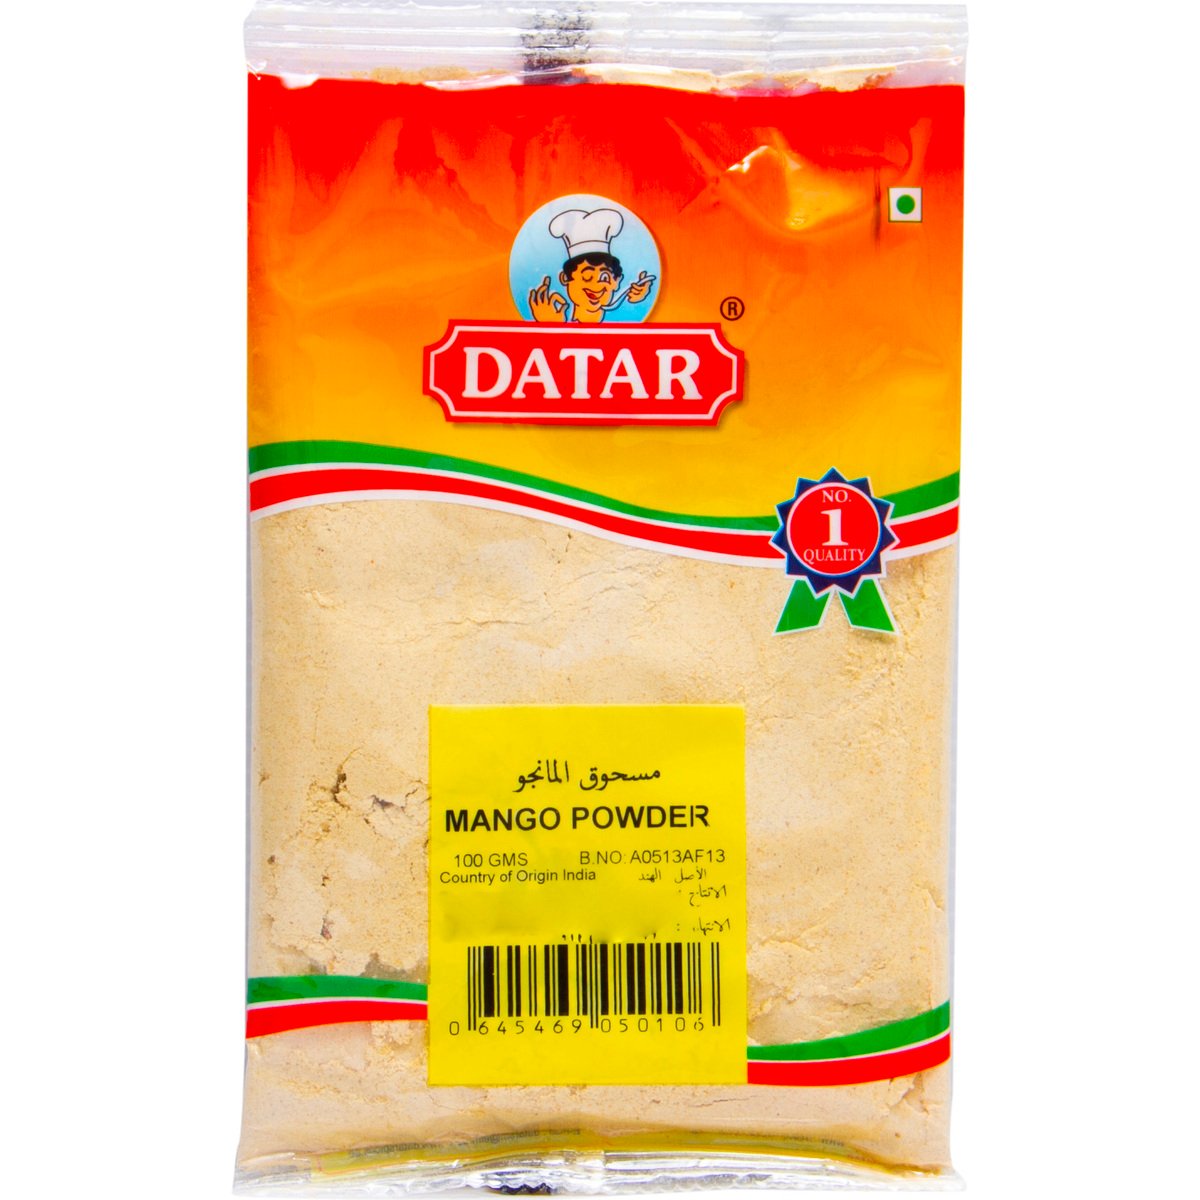 Buy Datar Mango Powder 100 g Online at Best Price | Indian | Lulu UAE in UAE